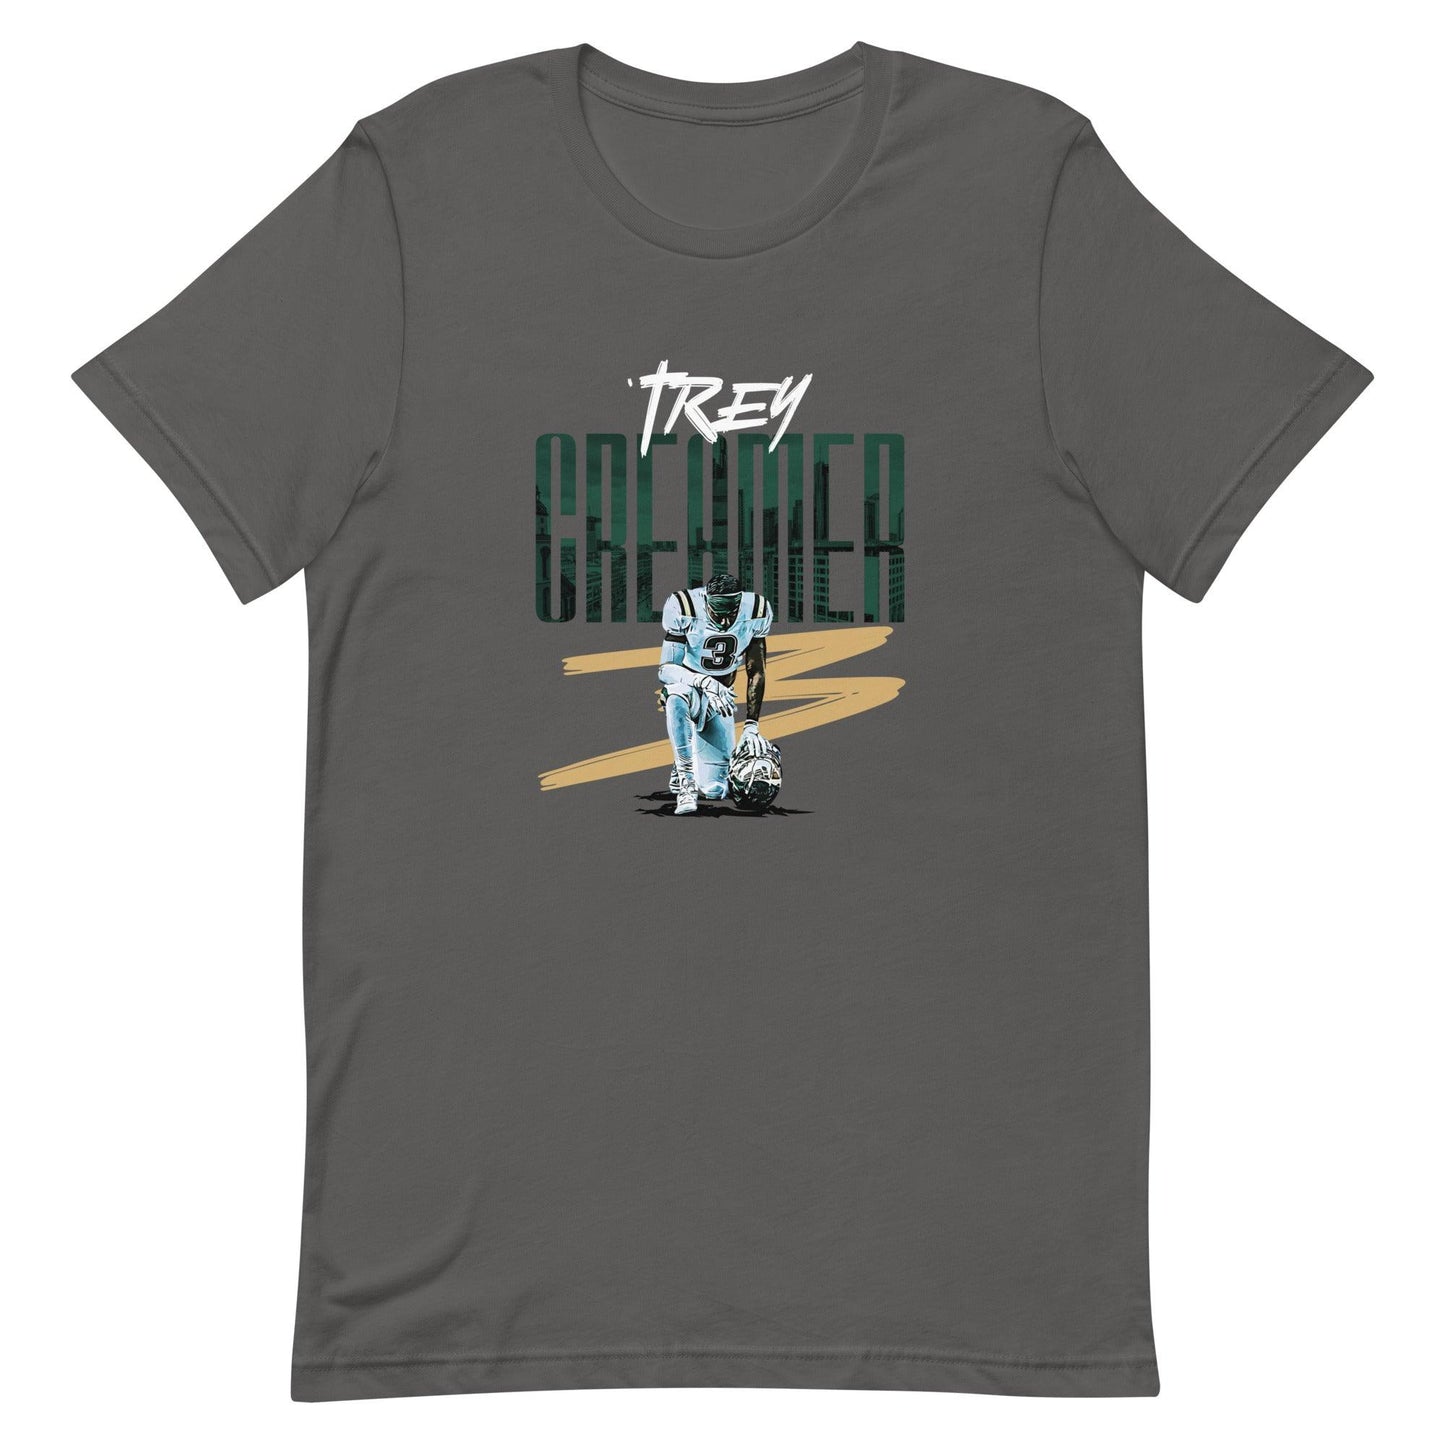 Trey Creamer "Gameday" t-shirt - Fan Arch